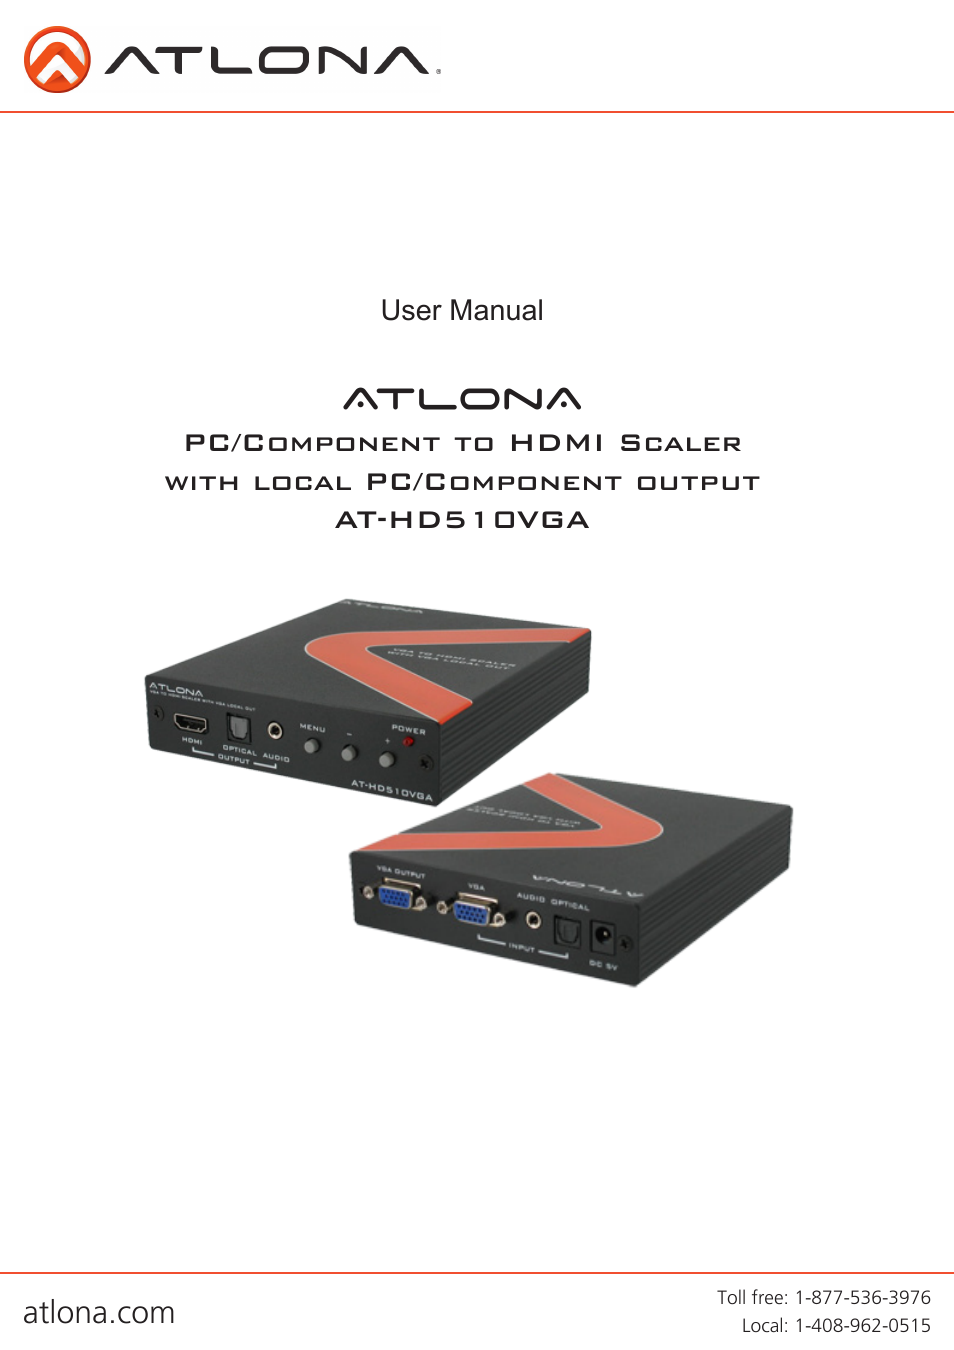 Atlona AT HD510VGA User Manual | 12 pages